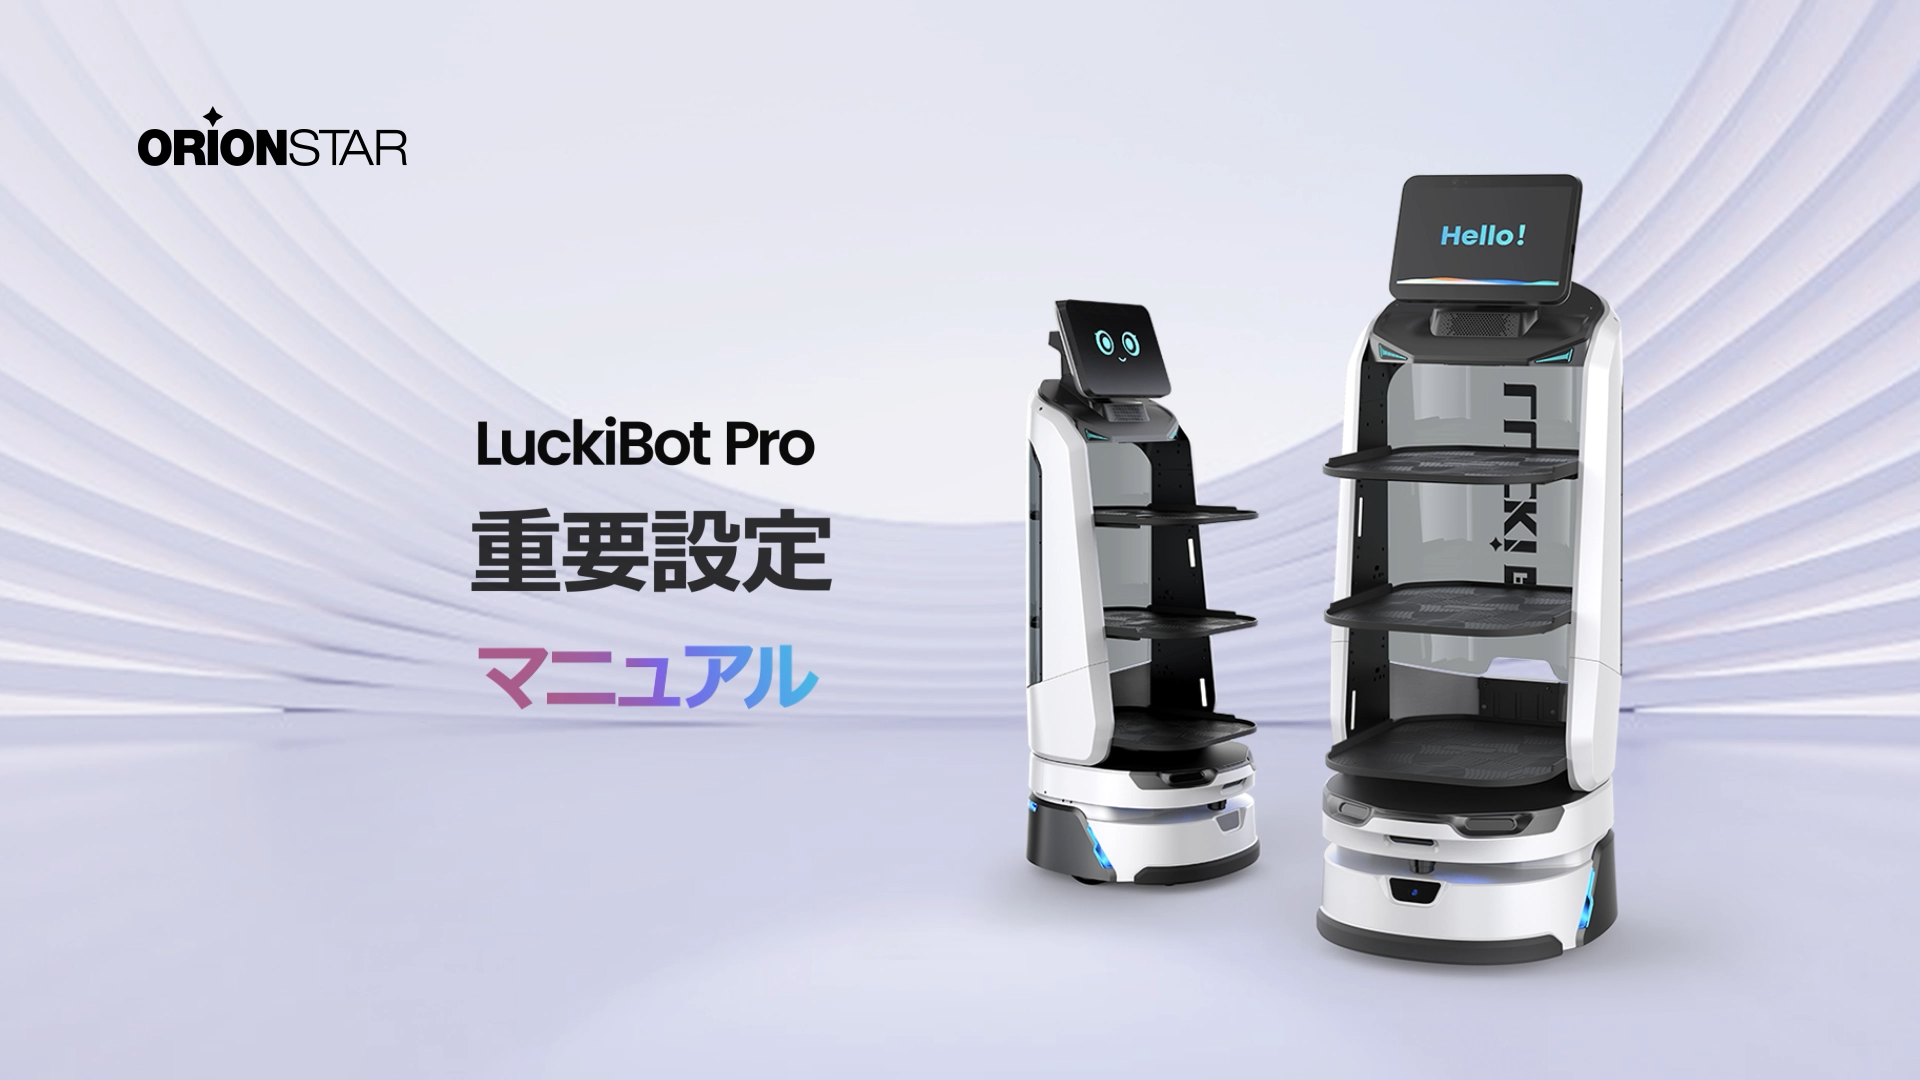 LuckiBot Proの重要な設定方法をご覧ください。